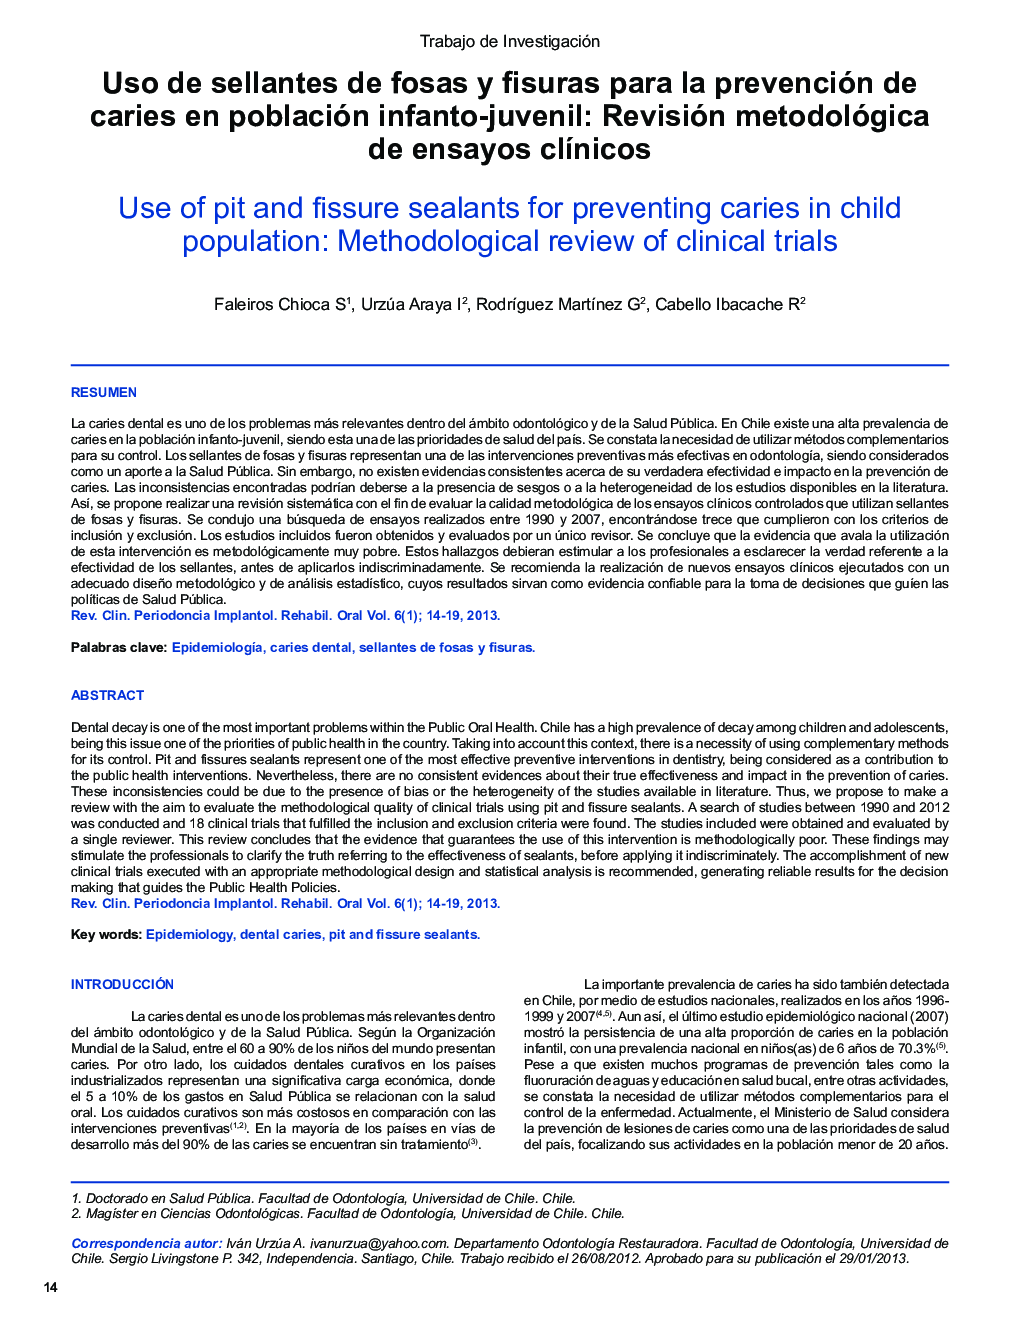 Uso de sellantes de fosas y fisuras para la prevención de caries en población infanto-juvenil: Revisión metodológica de ensayos clínicos